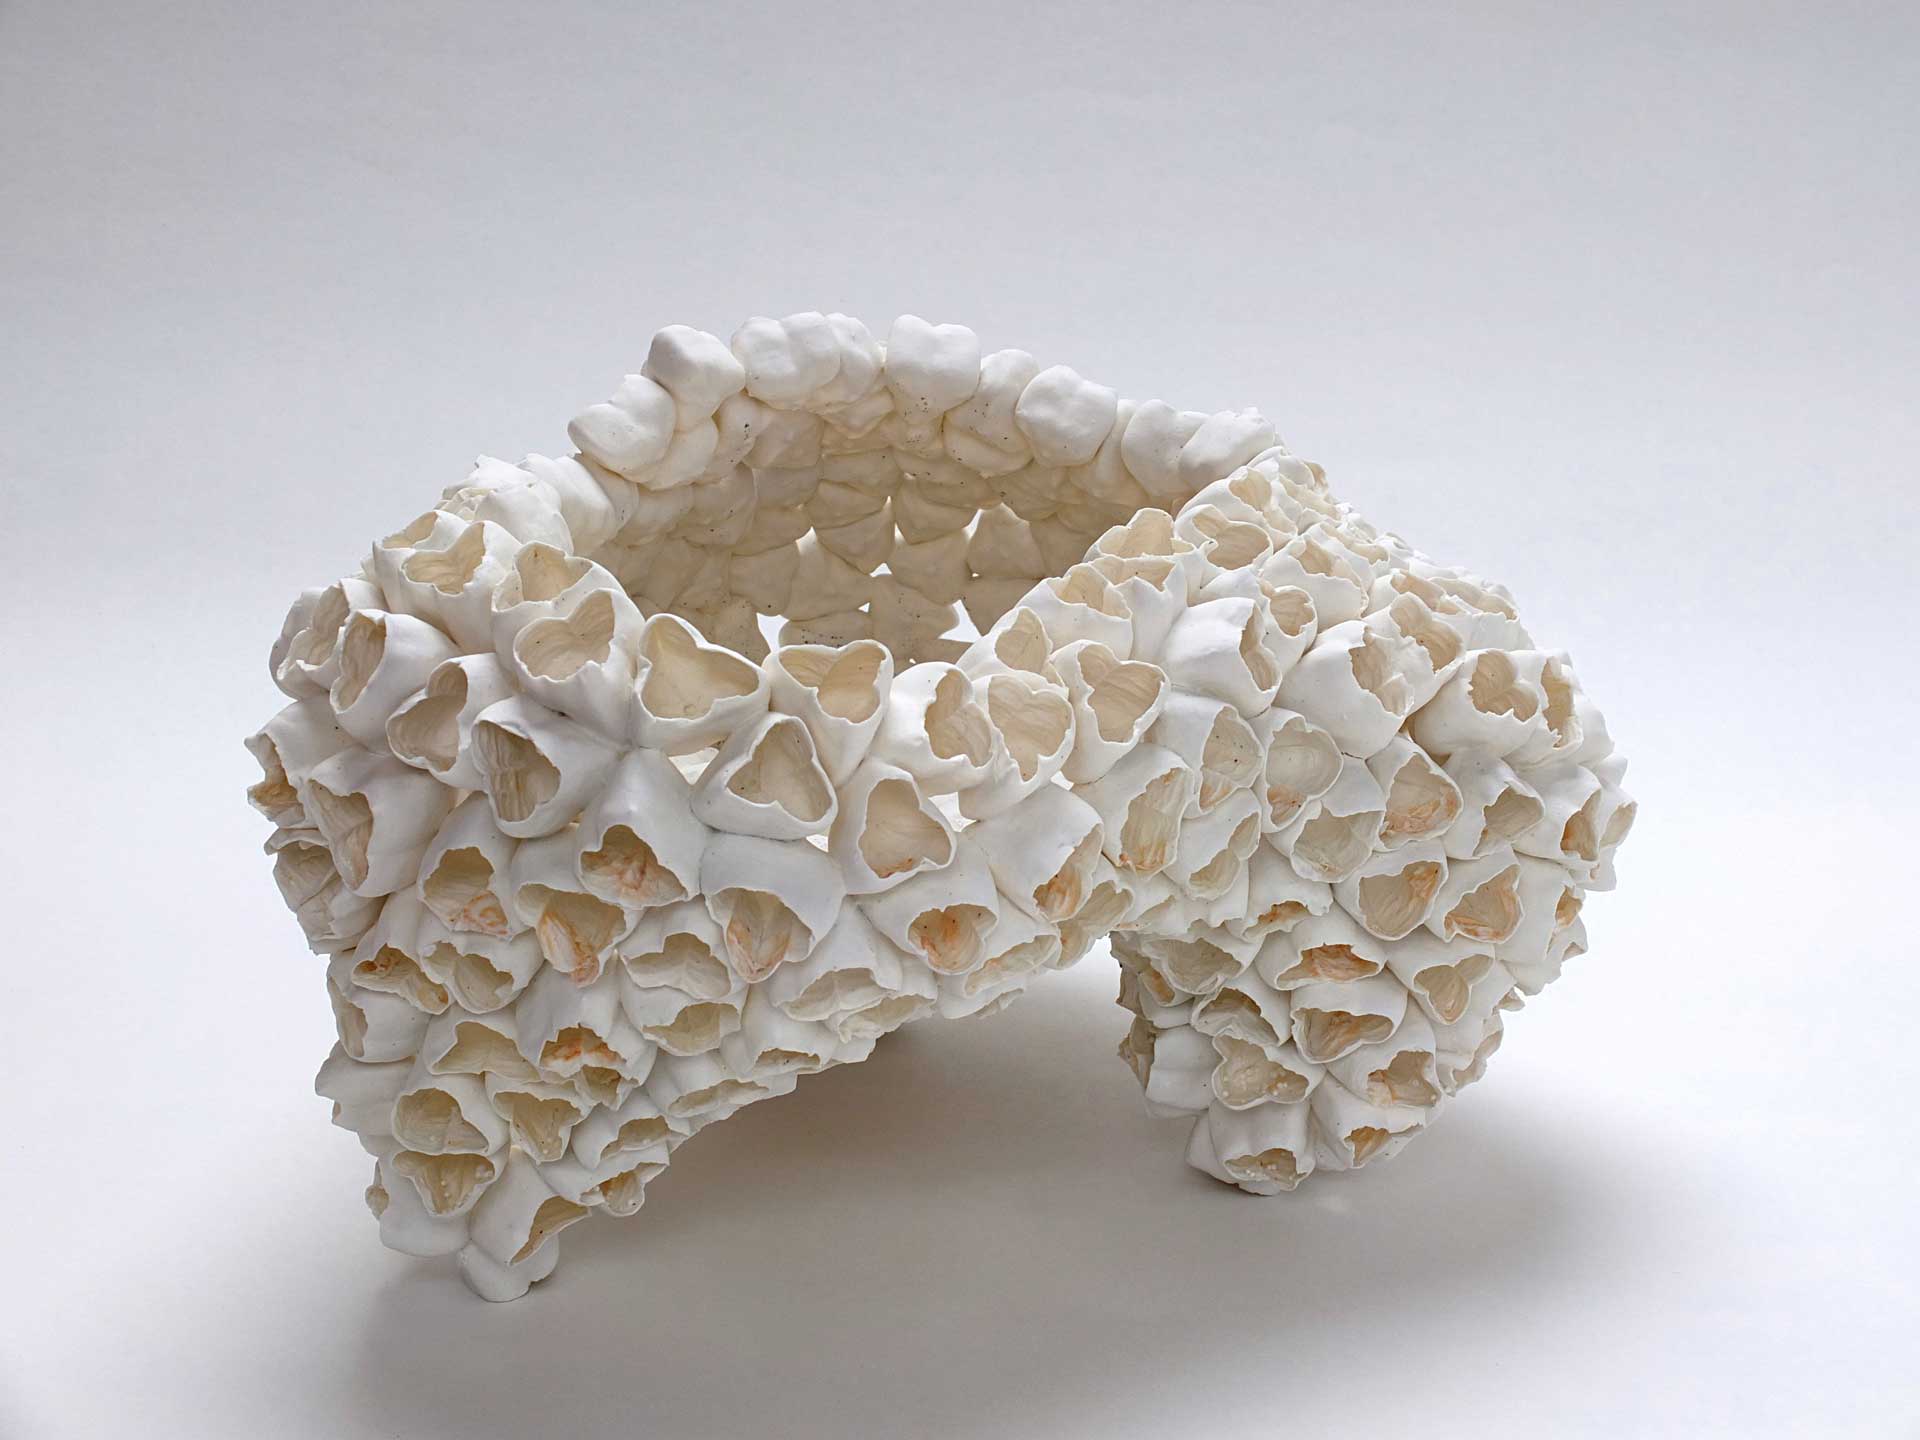 Concrétion - Papier porcelaine - Ø 30 x H. 19 cm - 2018 - Photo : P. Gruszow